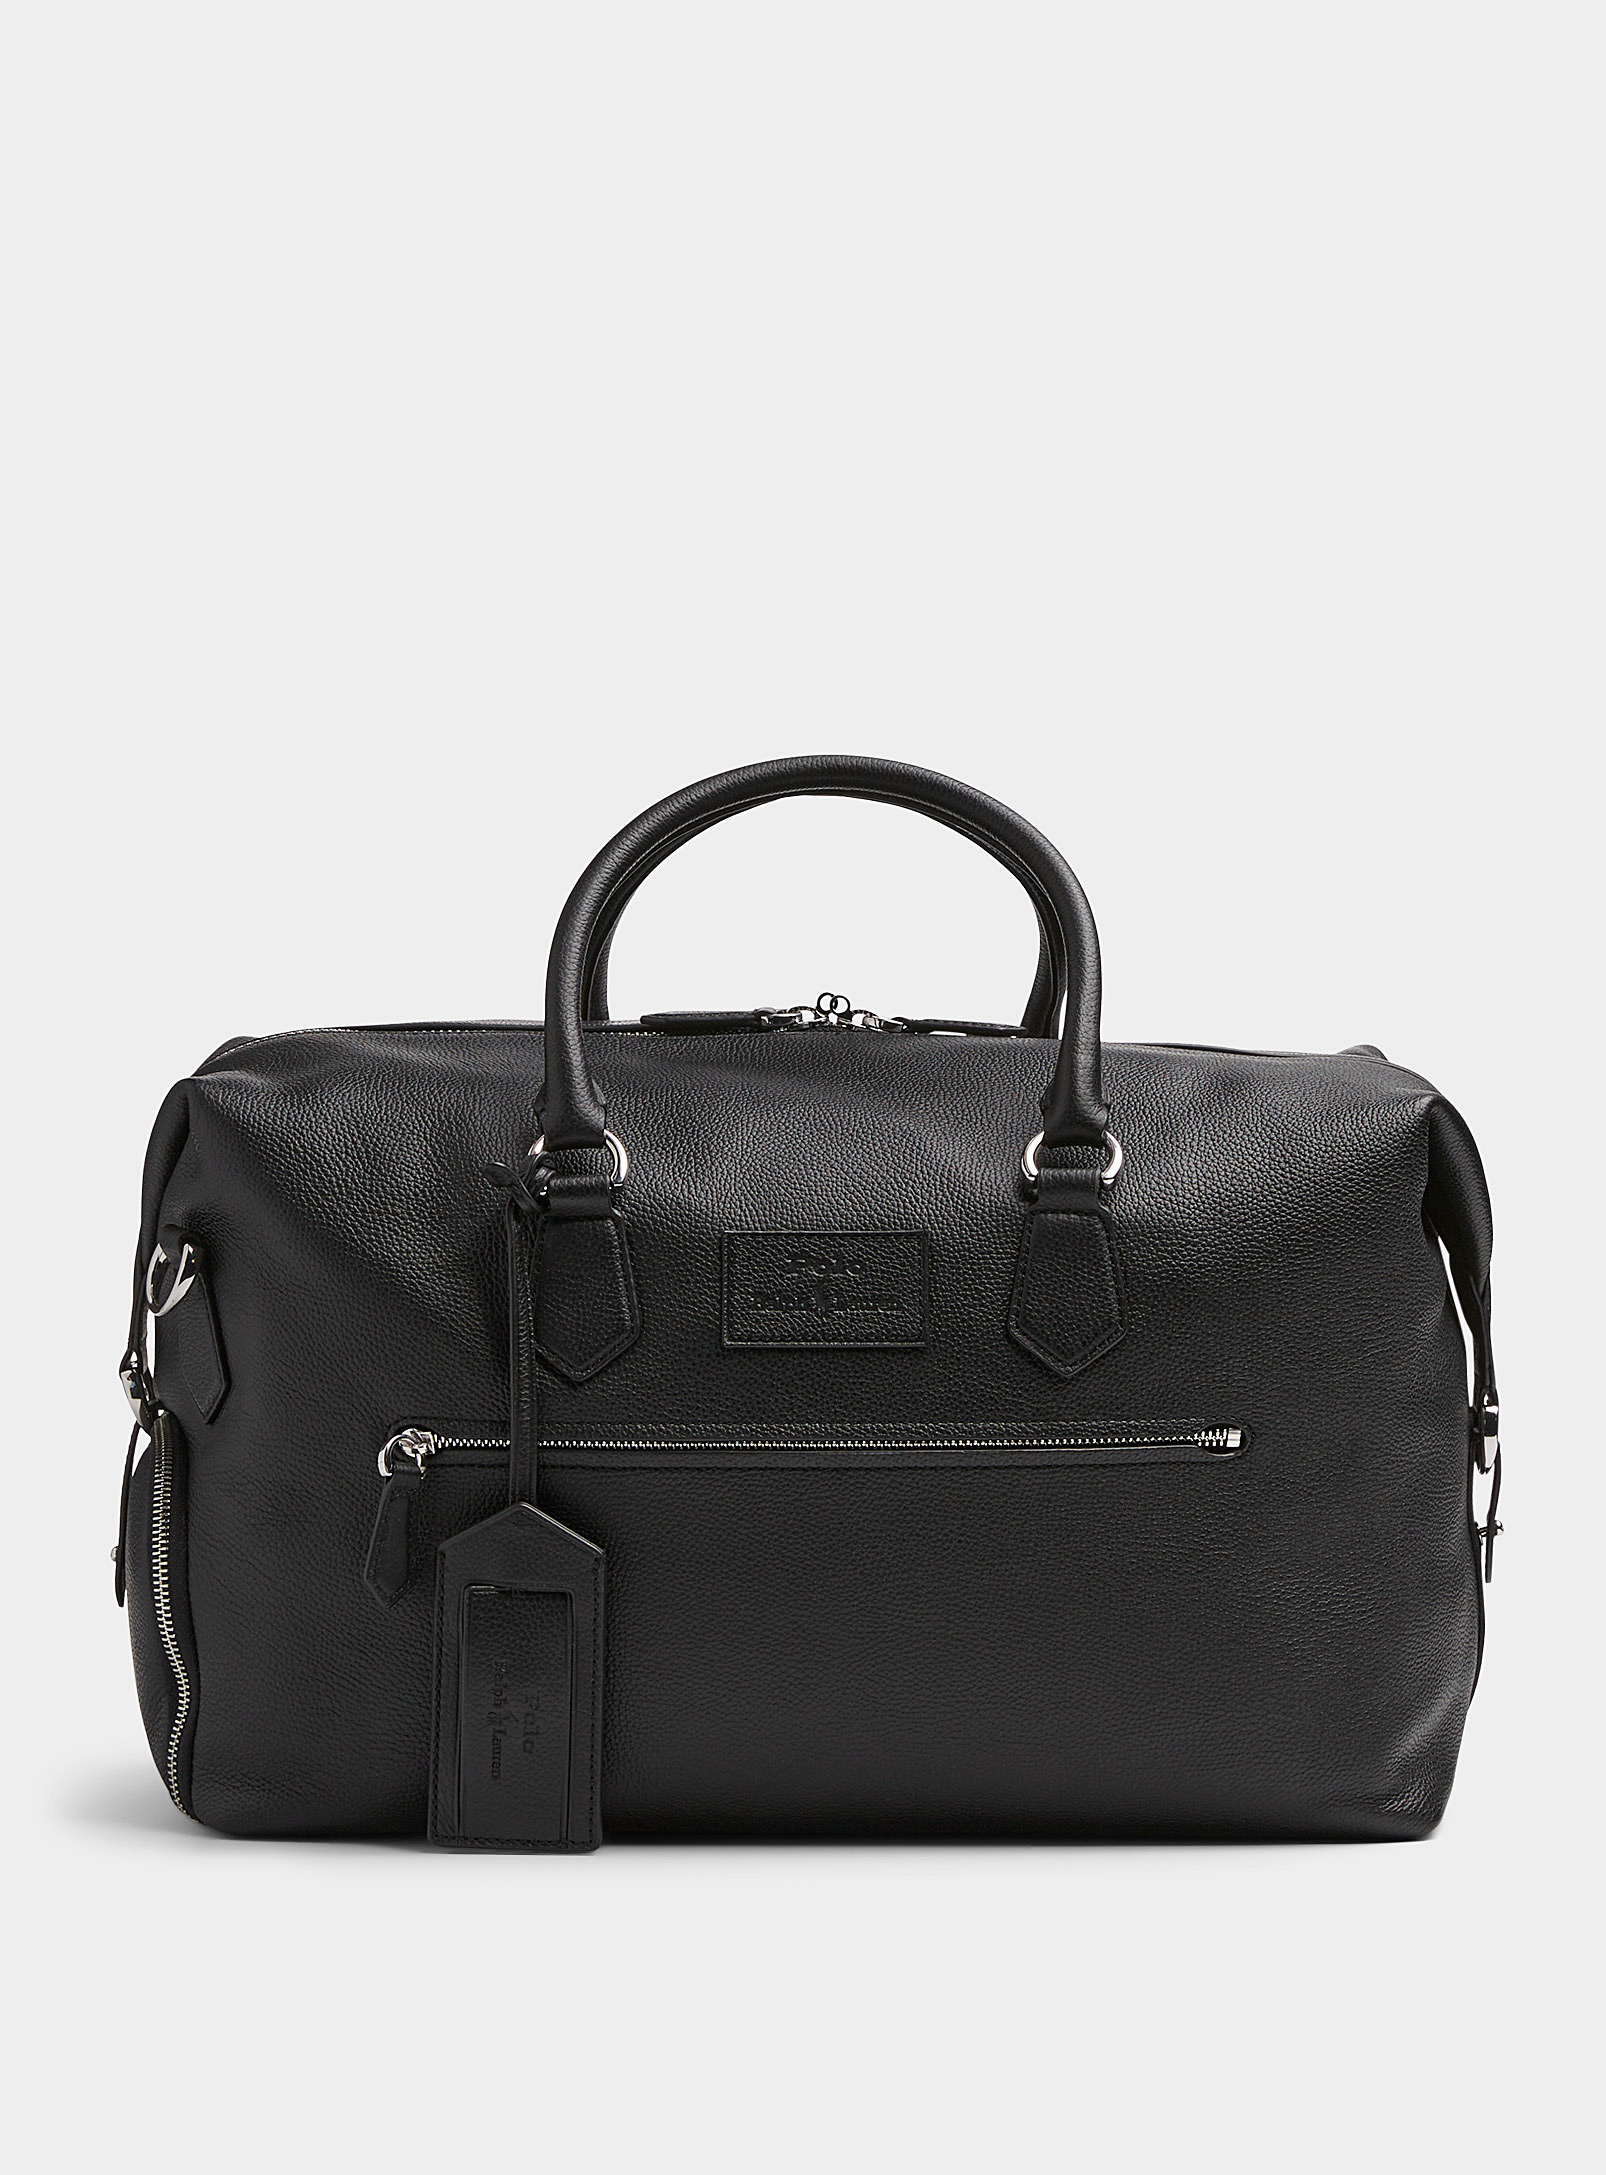 Polo Ralph Lauren - Men's Large leather emblem weekend bag